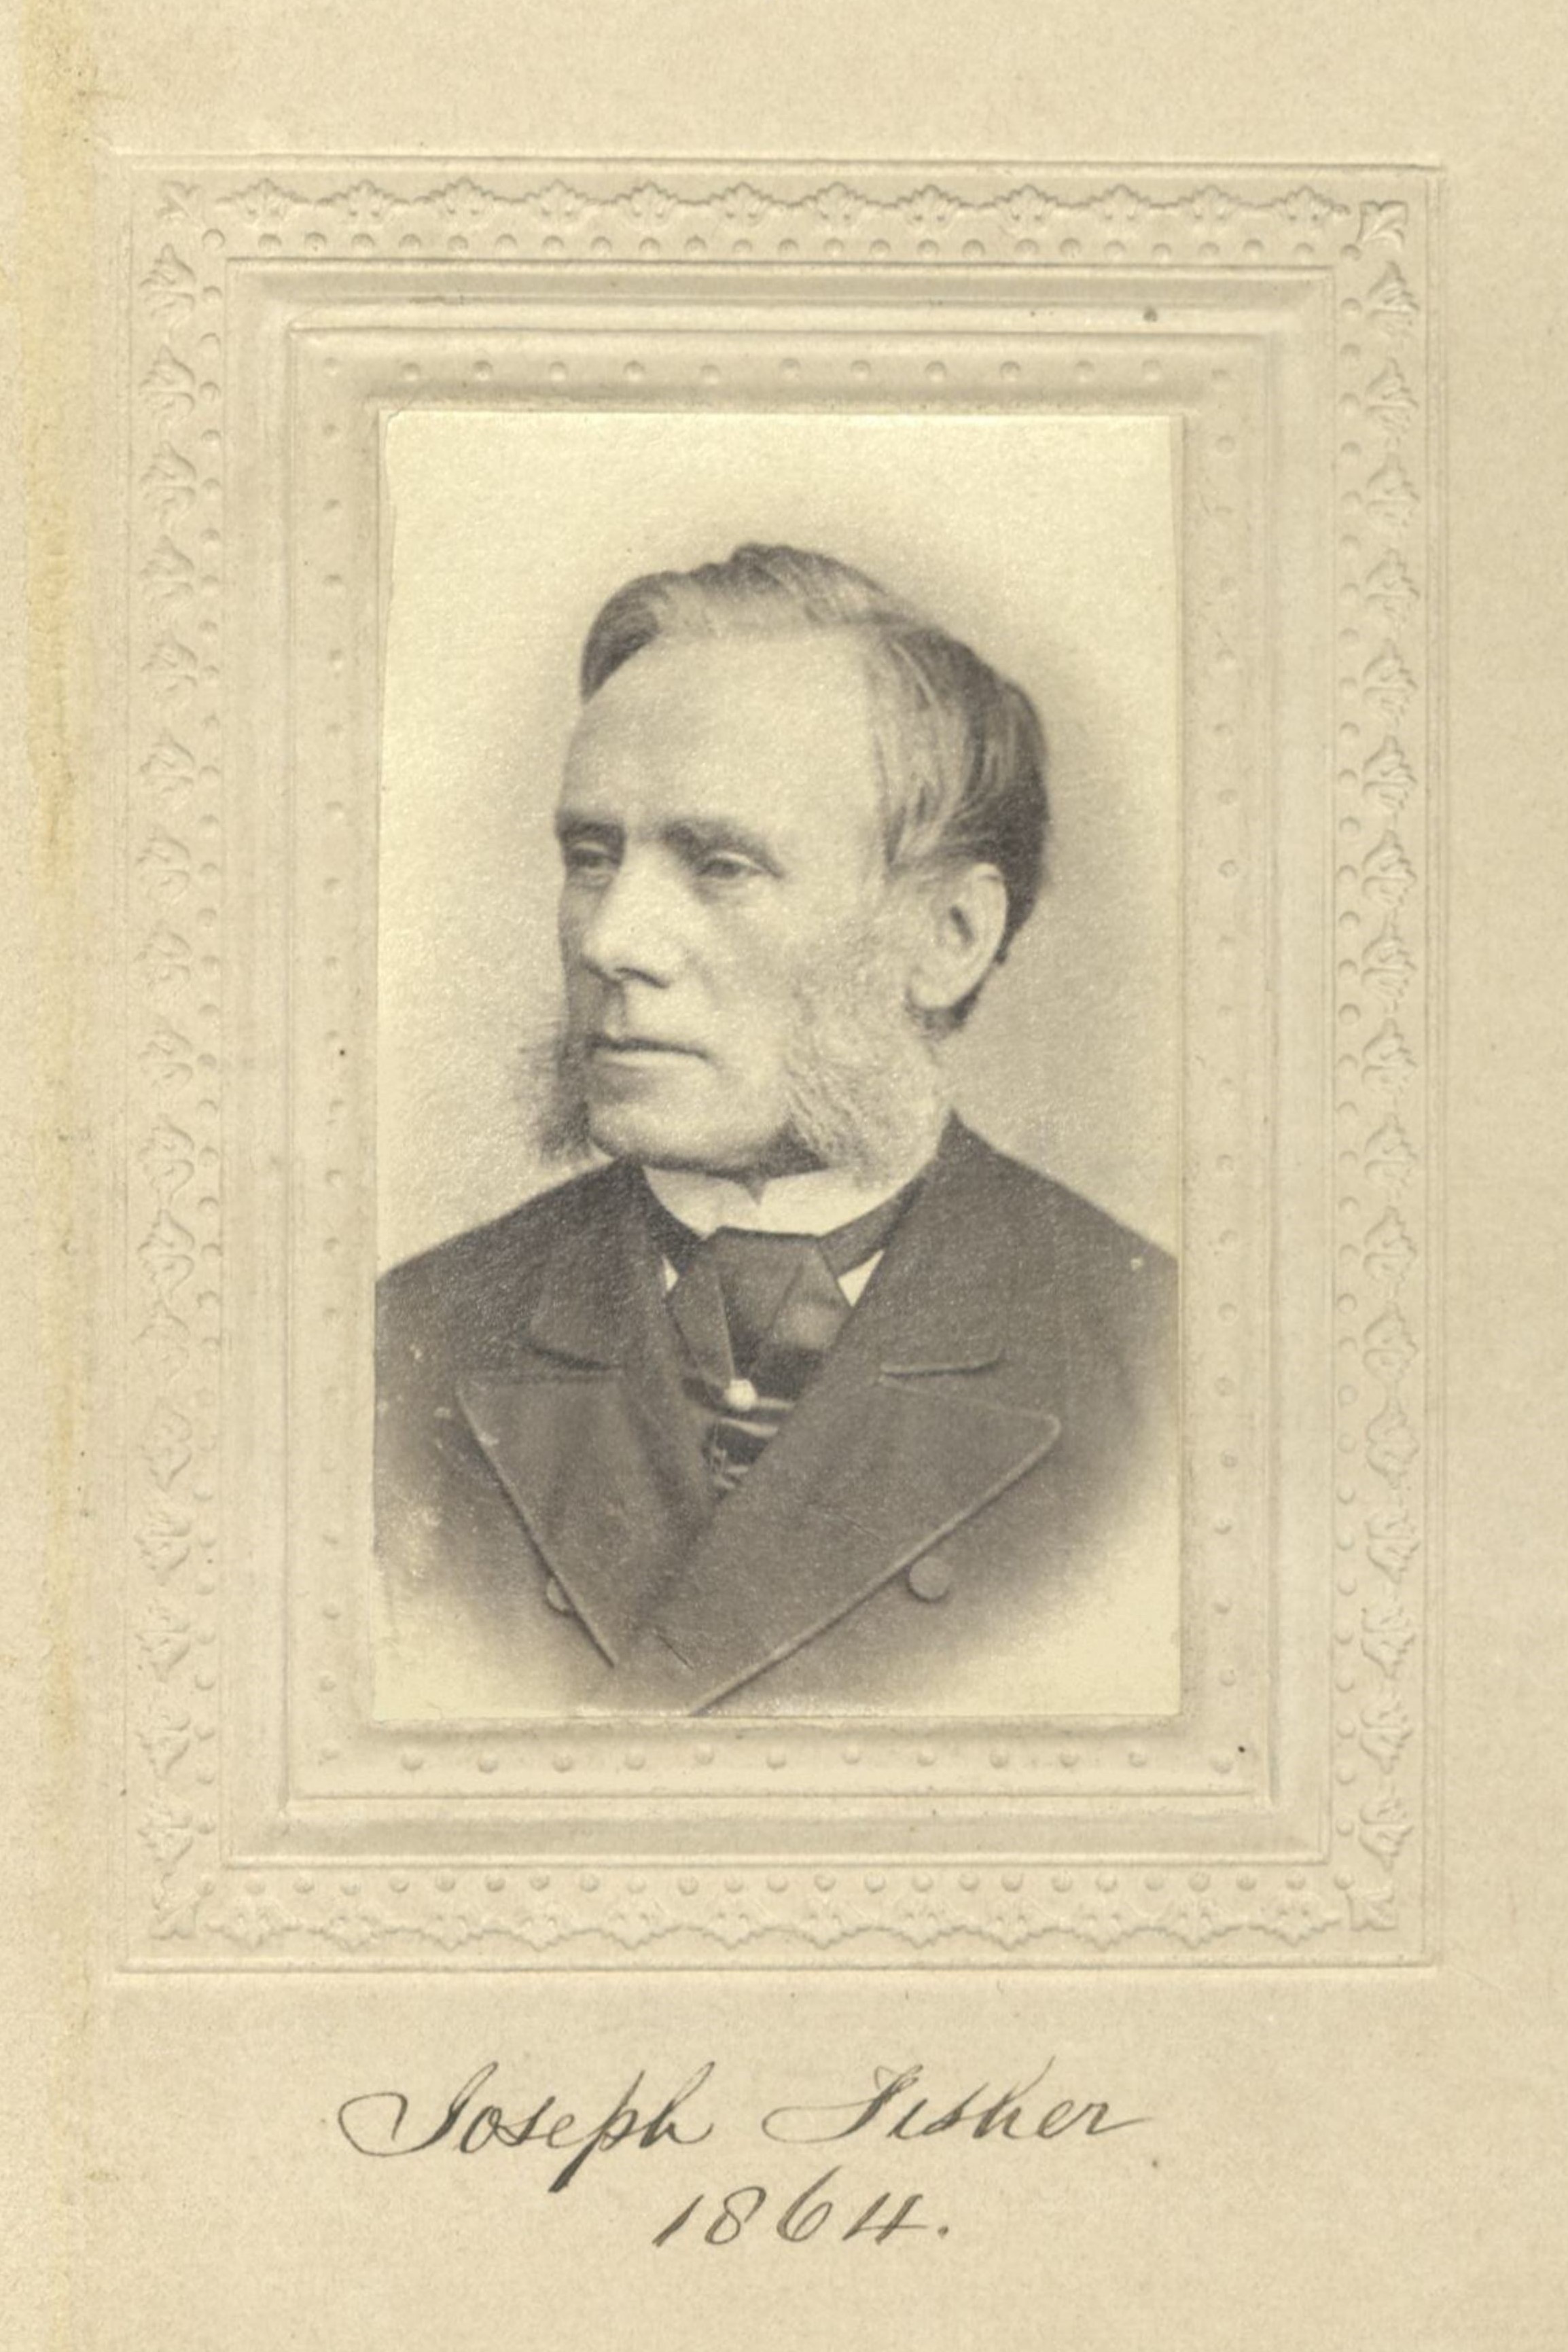 Member portrait of Joseph Fisher